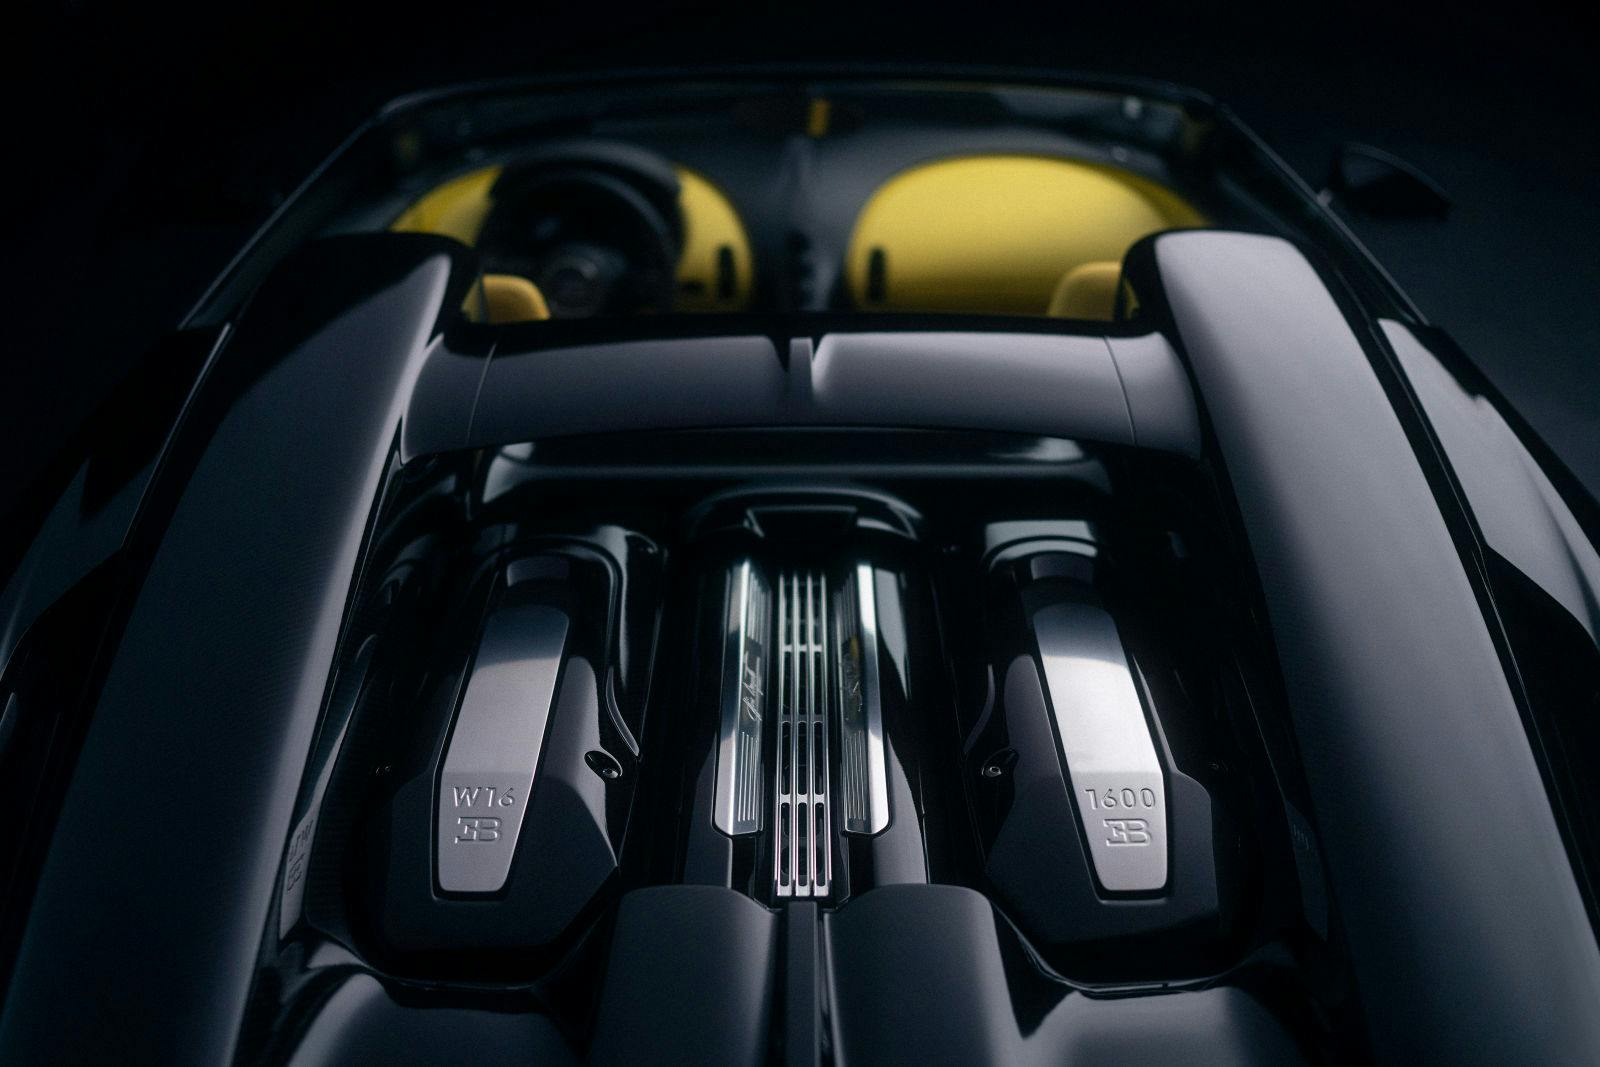 Le moteur de la Bugatti W16 Mistral et ses 1600 PS.